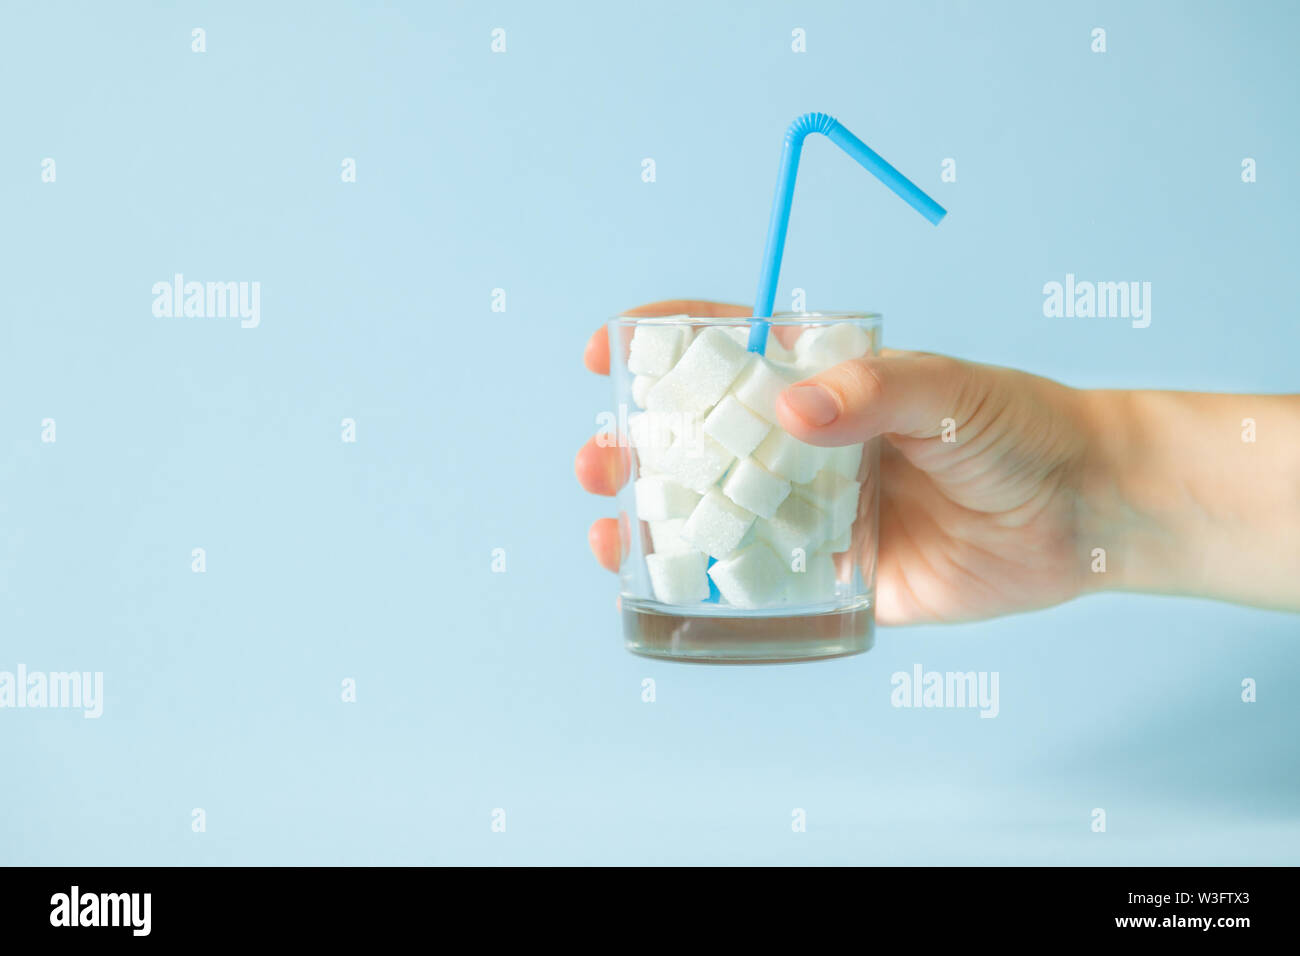 Excesivo consumo de azúcar concepto - la mano que sujeta el cristal con cubos de azúcar Foto de stock